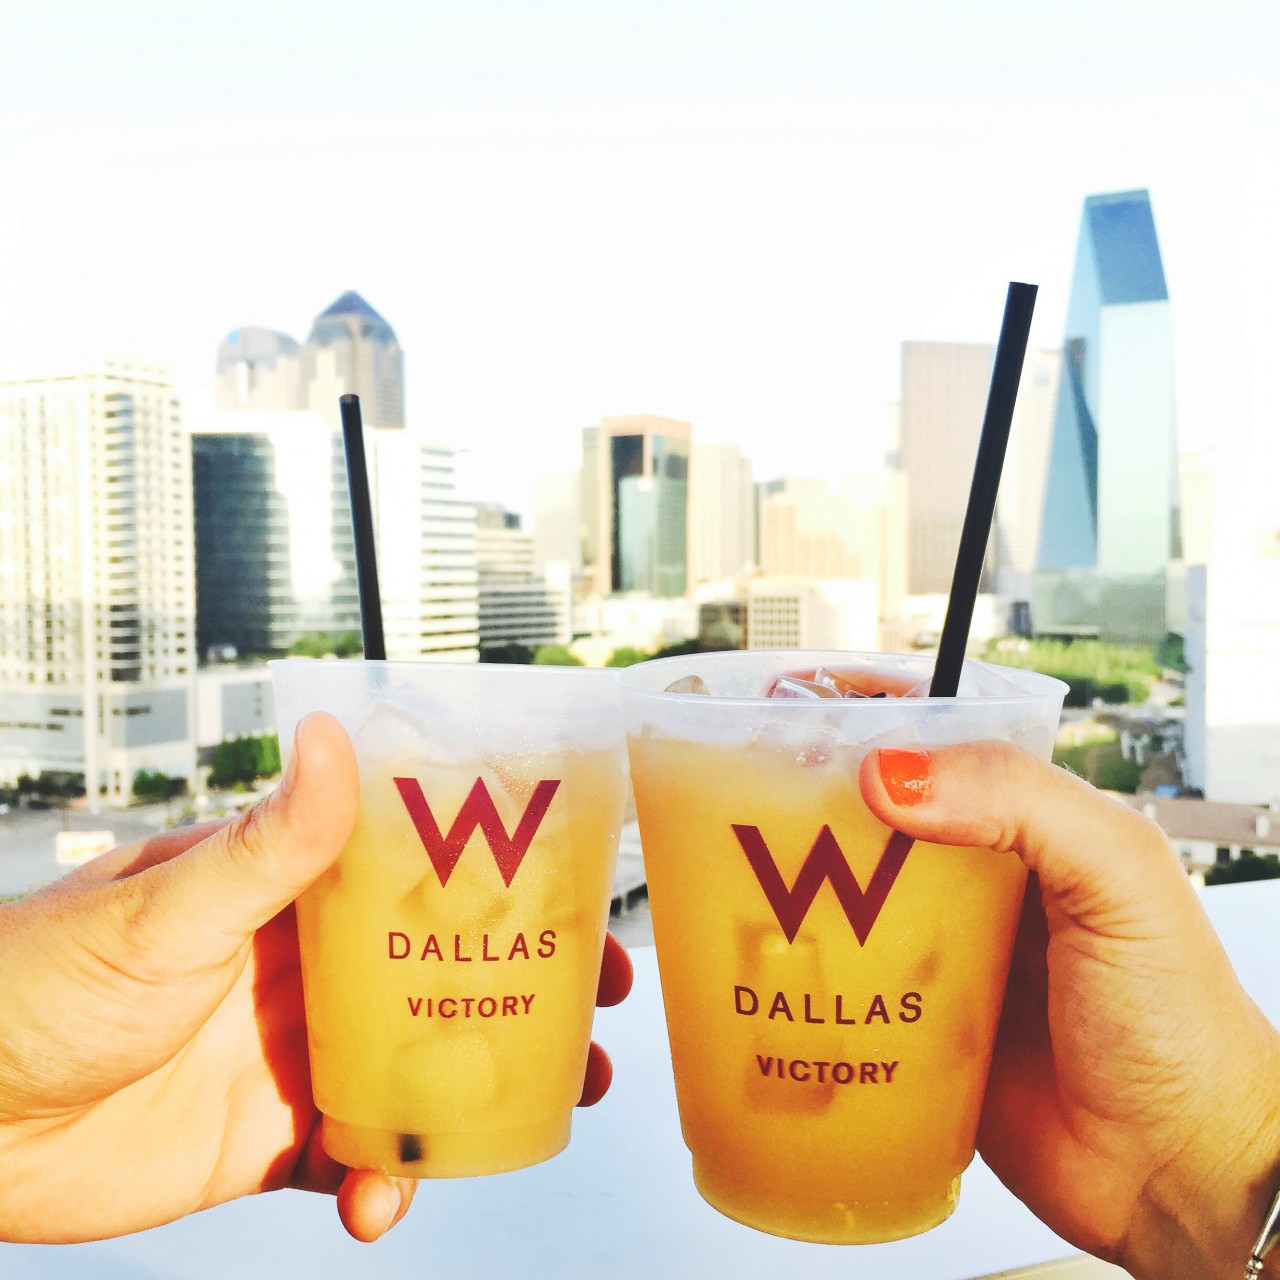 The W Hotel Dallas - Where to Stay in Dallas